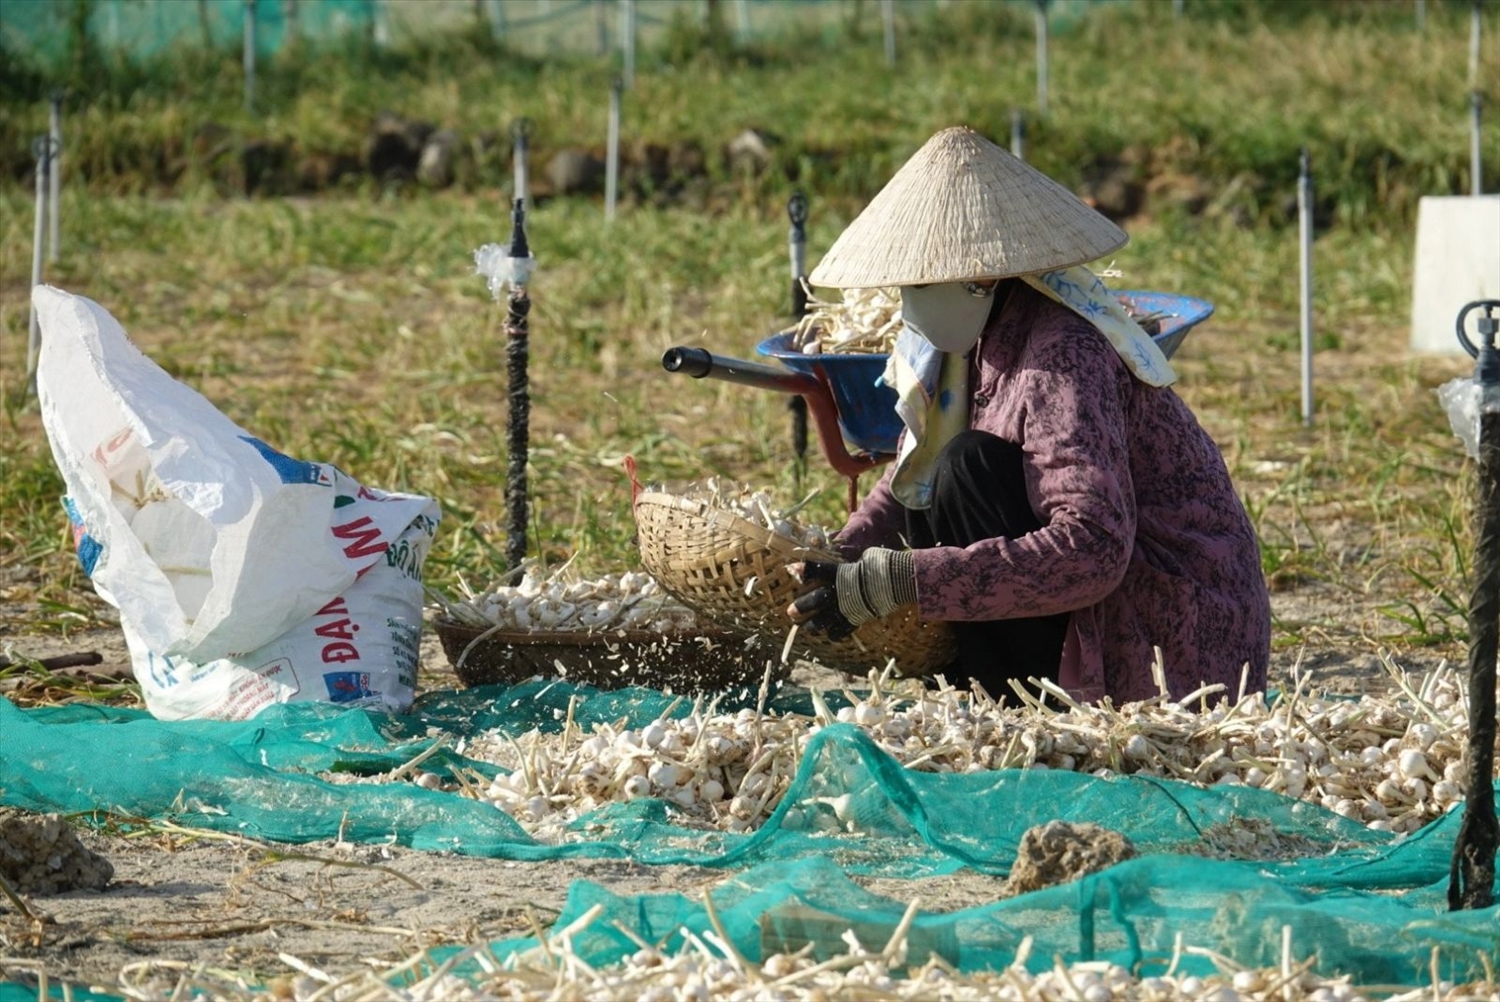 Hiện nay, tỏi Lý Sơn đang vào mùa thu hoạch chính nhưng sản lượng sụt giảm khiến người dân điêu đứng